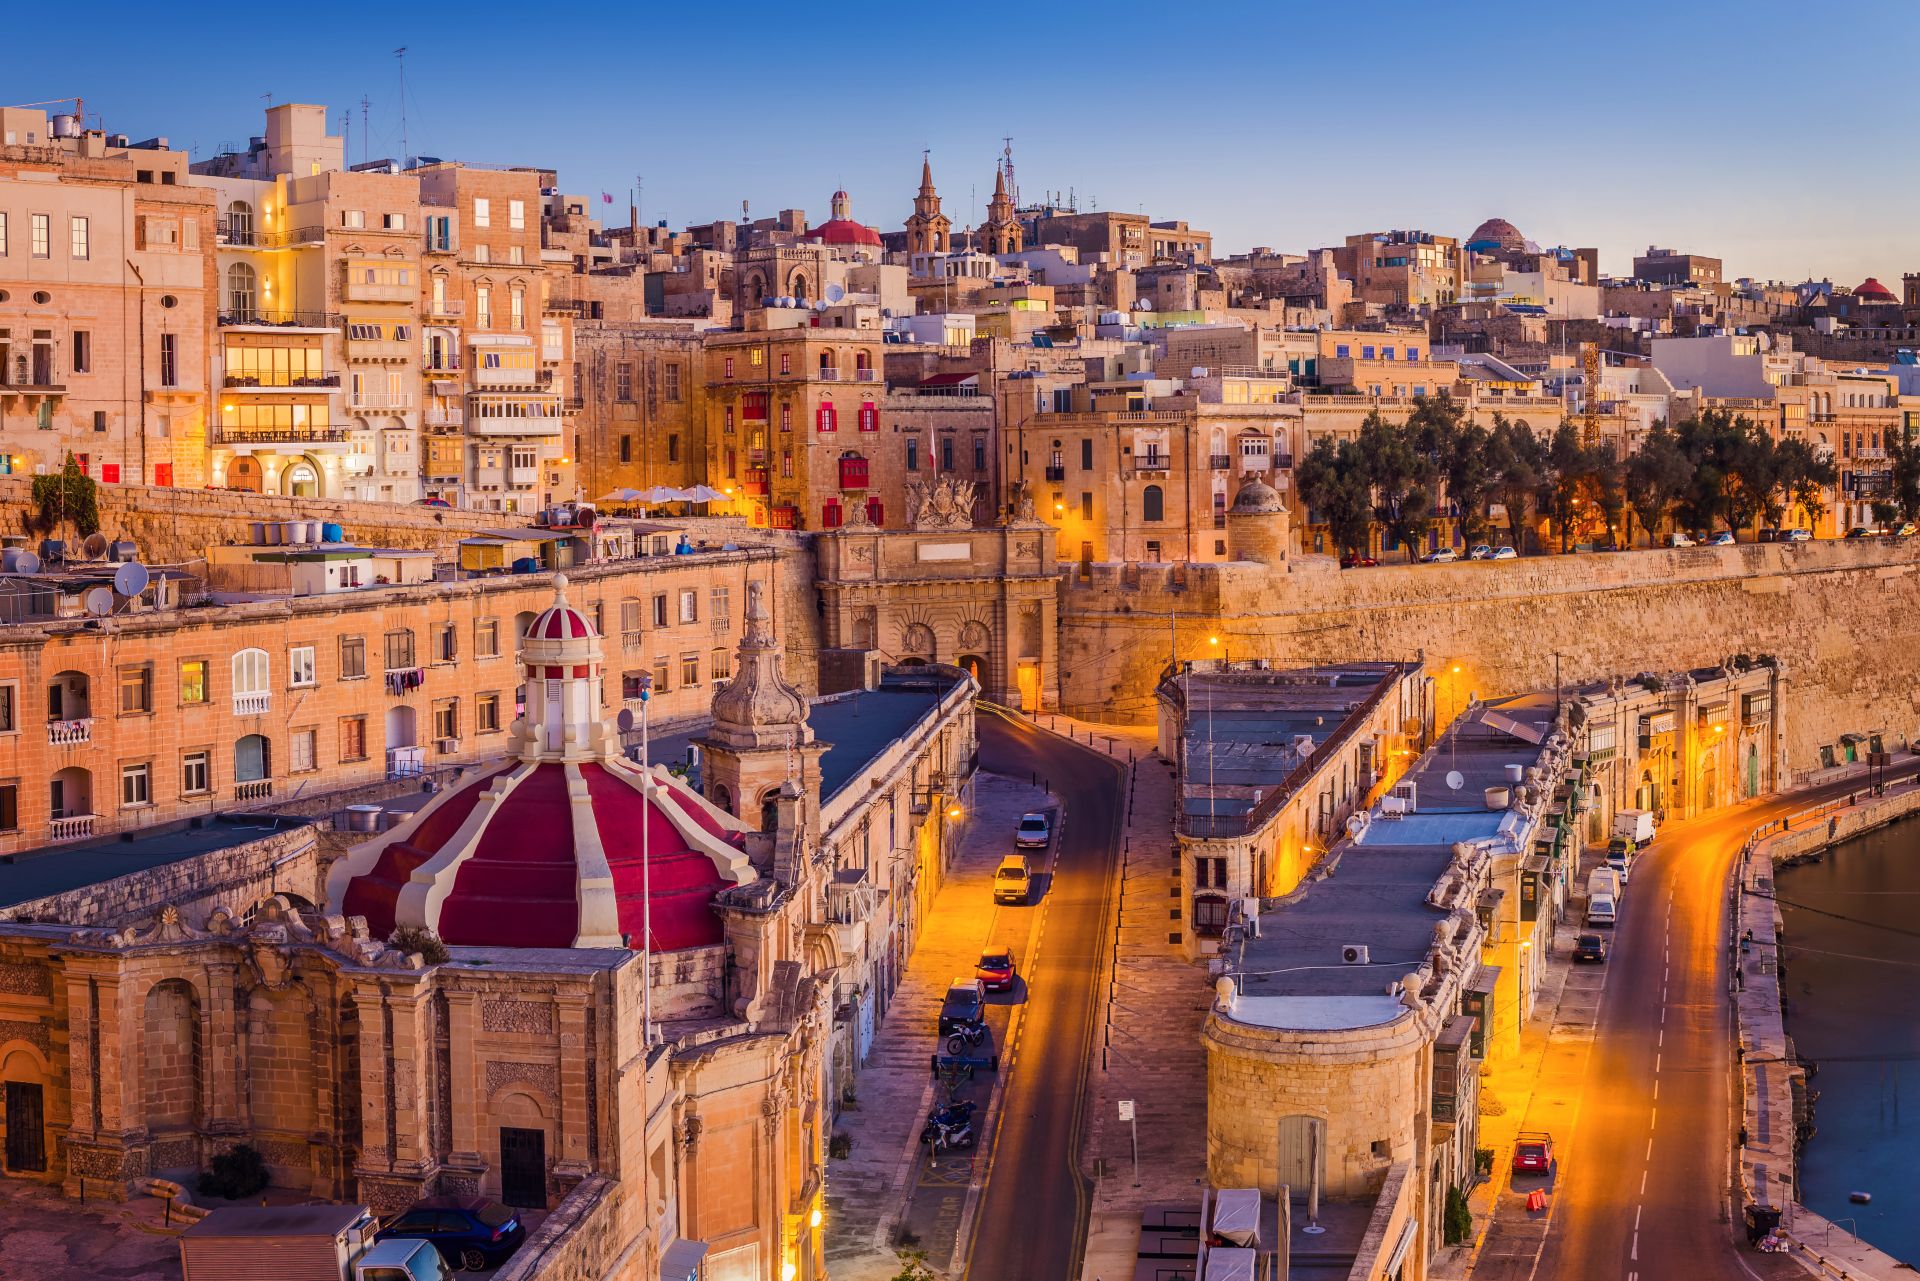 Le case e le mura tradizionali di La Valletta